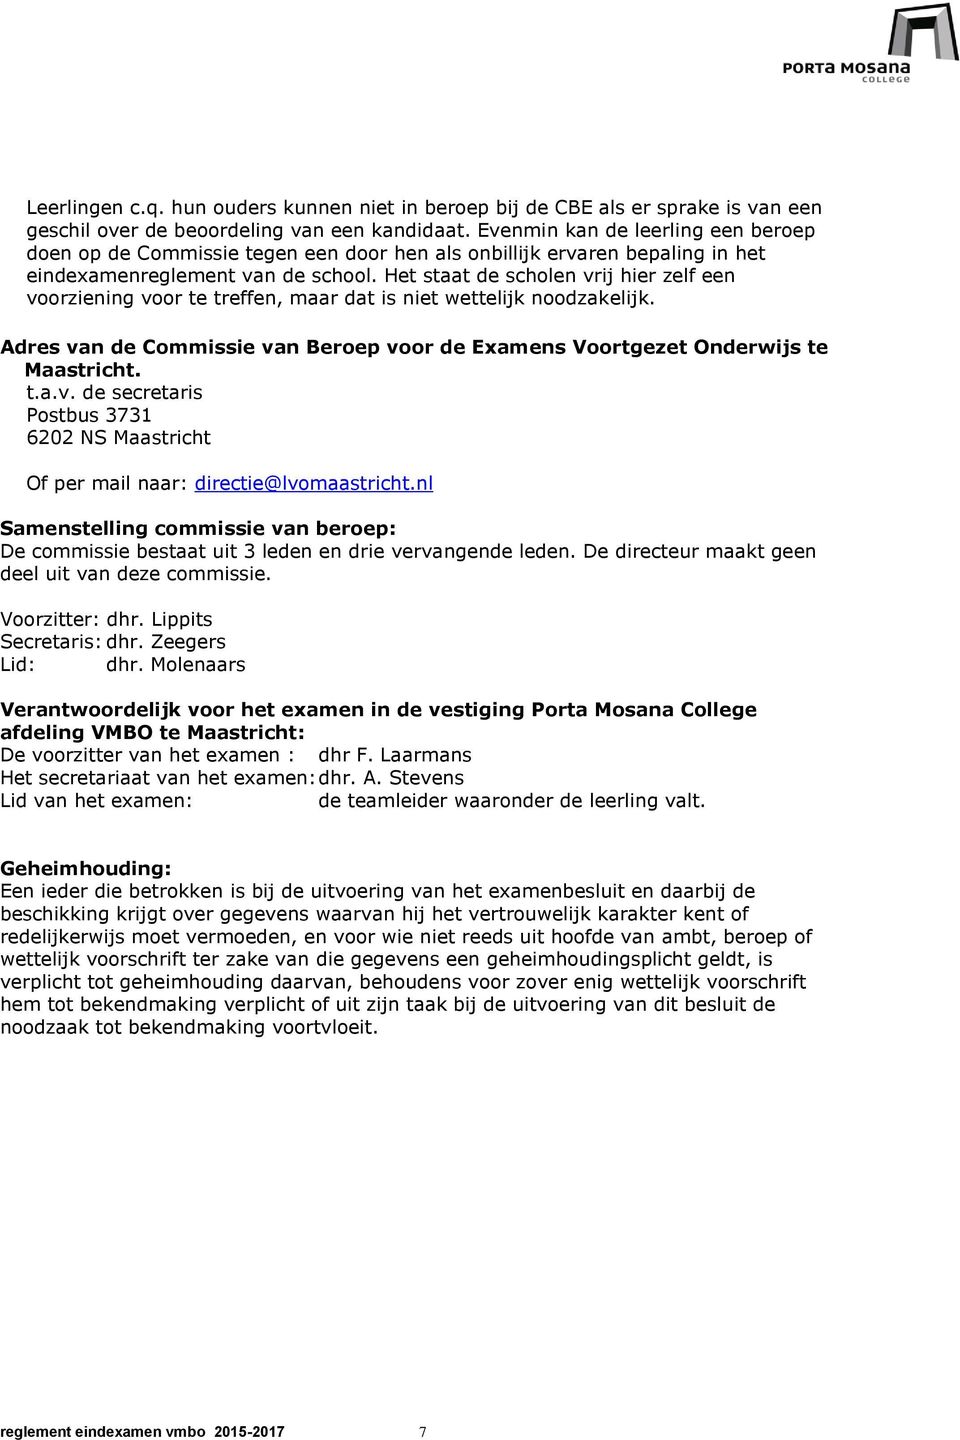 Het staat de scholen vrij hier zelf een voorziening voor te treffen, maar dat is niet wettelijk noodzakelijk. Adres van de Commissie van Beroep voor de Examens Voortgezet Onderwijs te Maastricht. t.a.v. de secretaris Postbus 3731 6202 NS Maastricht Of per mail naar: directie@lvomaastricht.